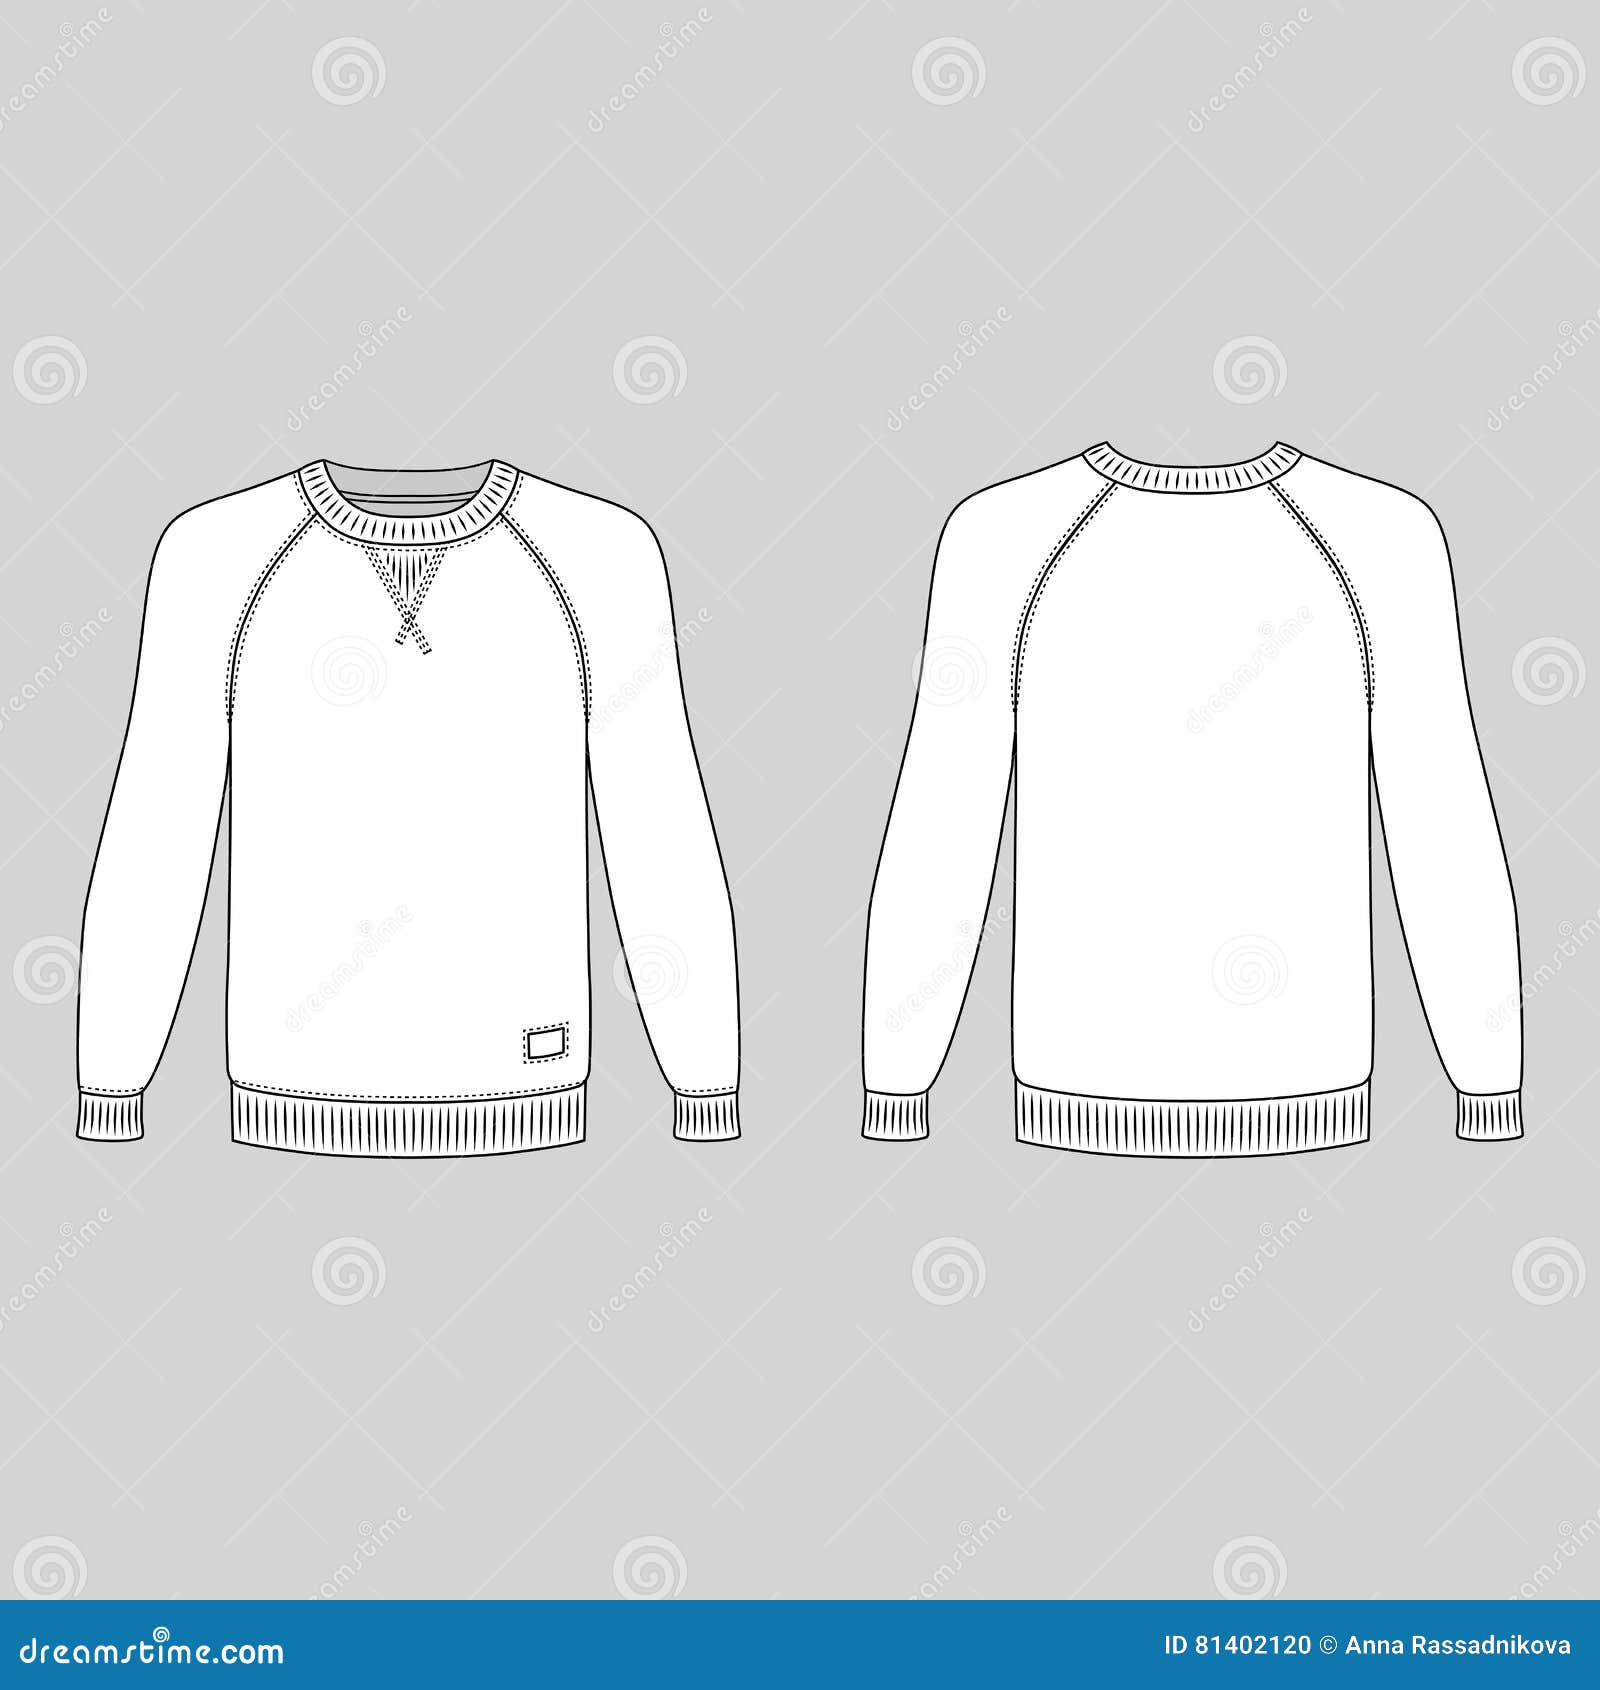 Raglan t-shirt stock vector. Illustration of jumper, black - 81402120